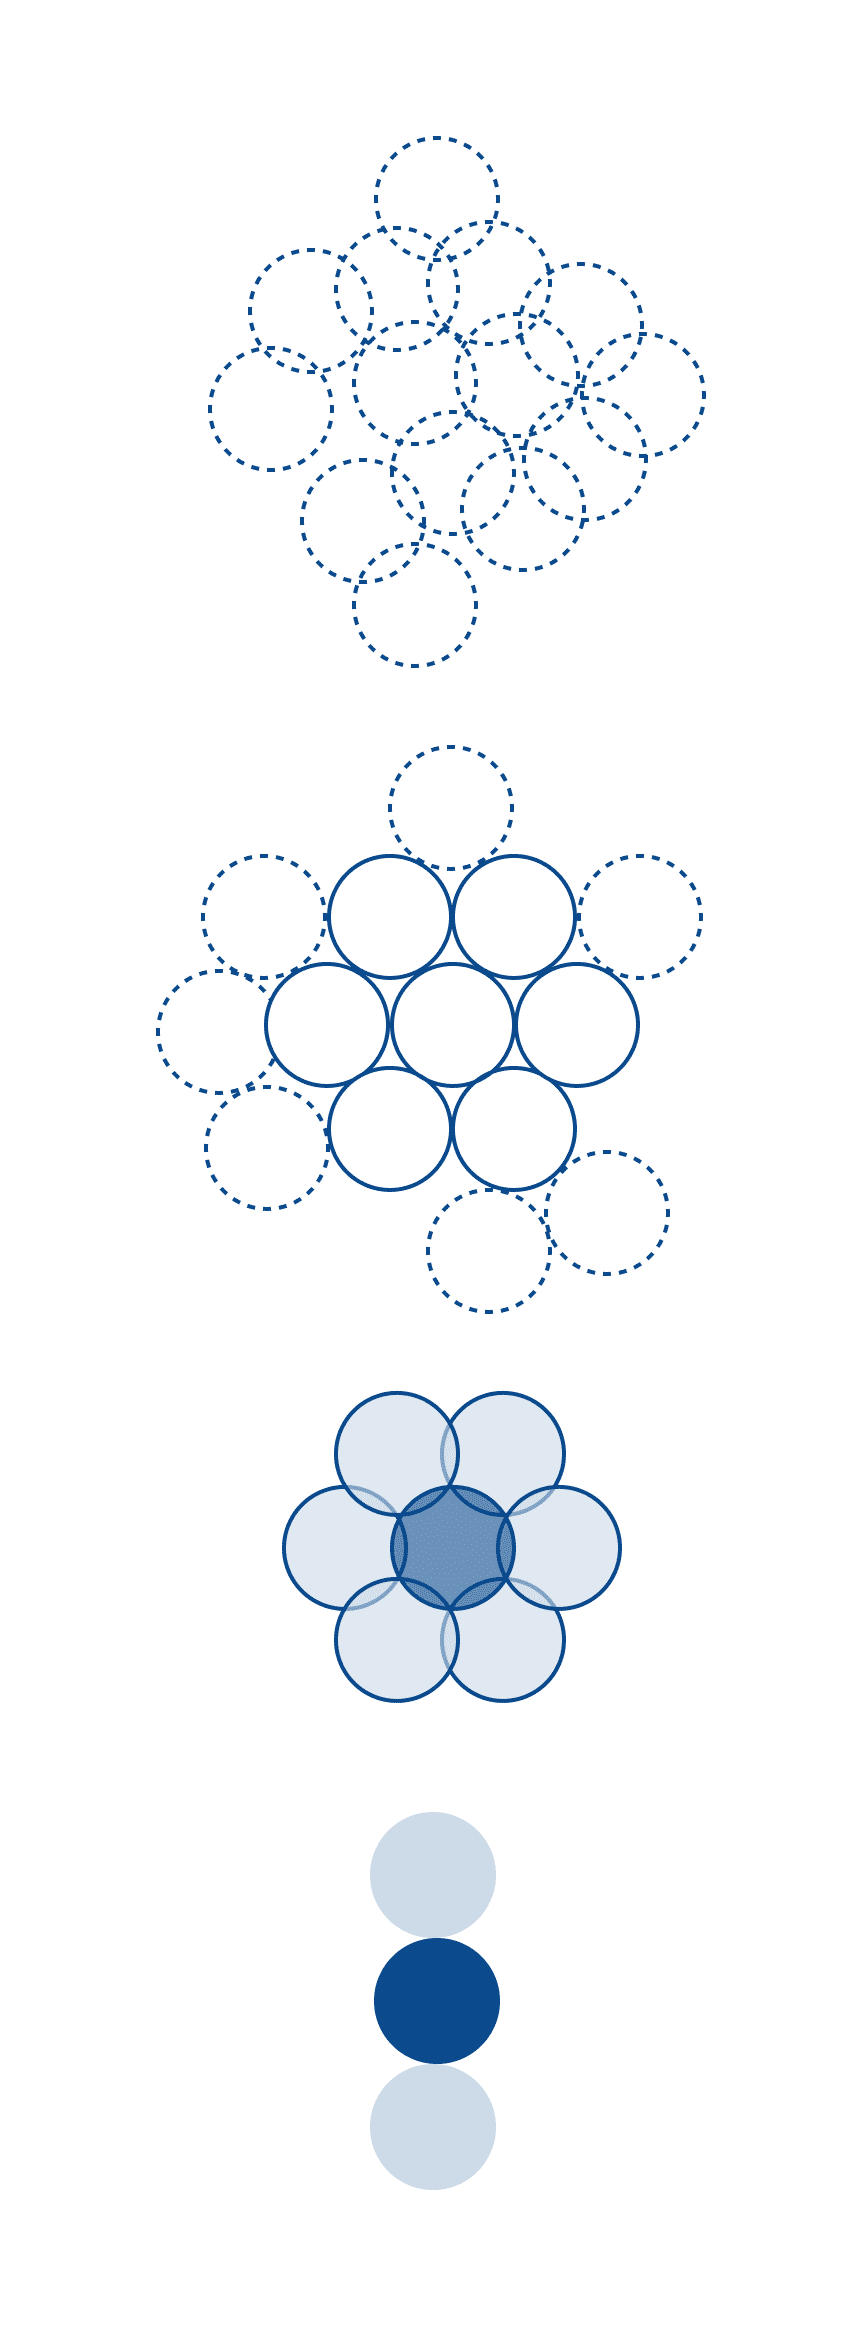 Open and collaborative design process evolution diagram